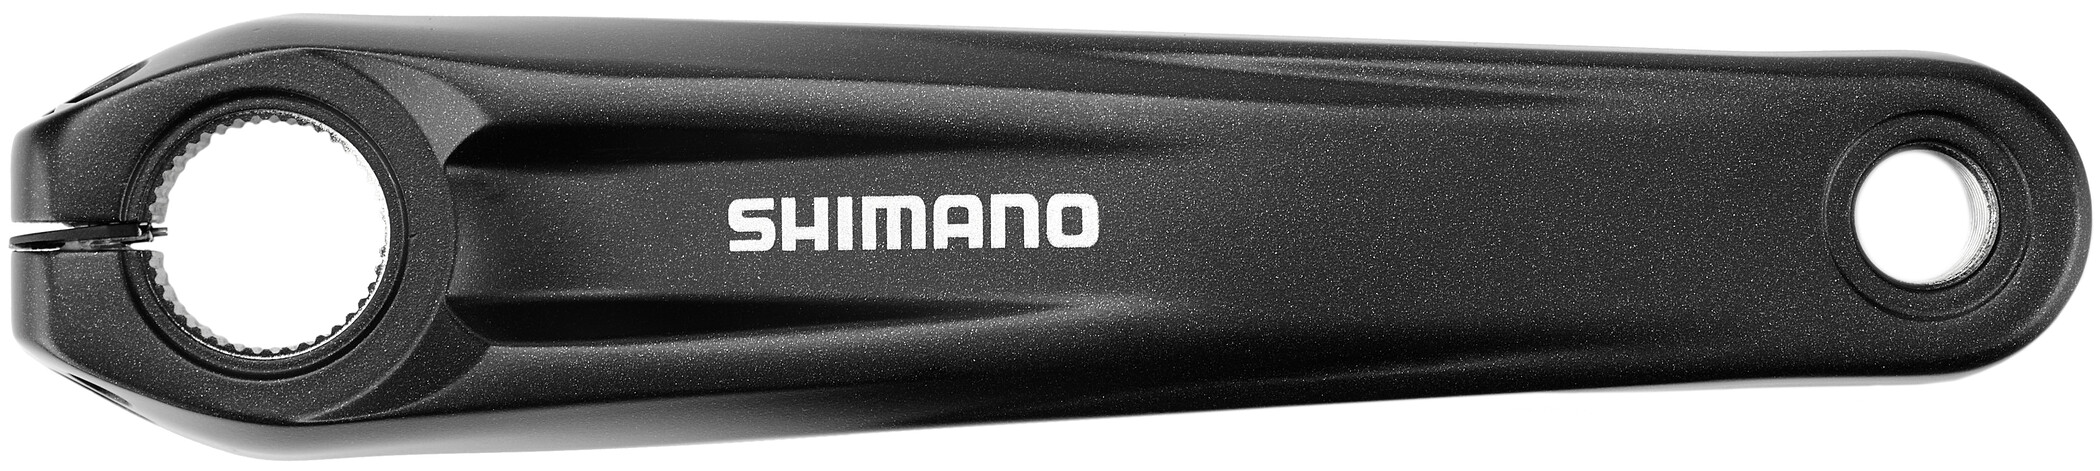 Shimano Steps pedalarm FC-E8000 175 mm | crank arm